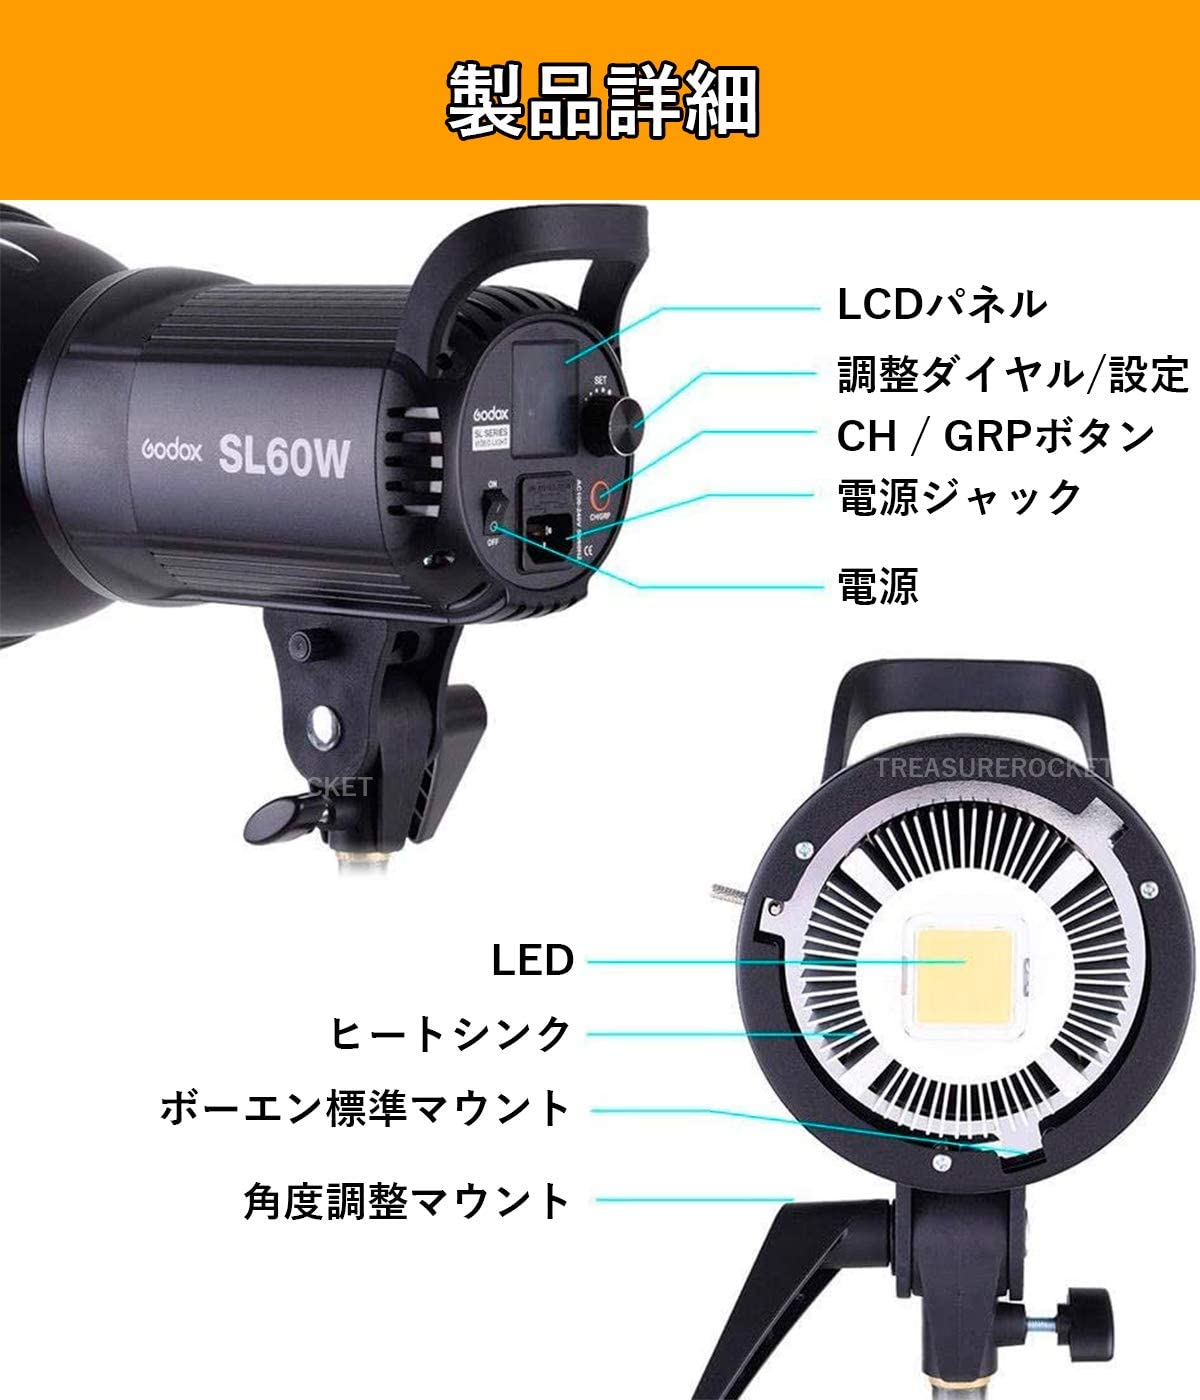 送料無料・即納 Godox ゴドックス LEDビデオライト未使用 SL60W デジタルカメラ